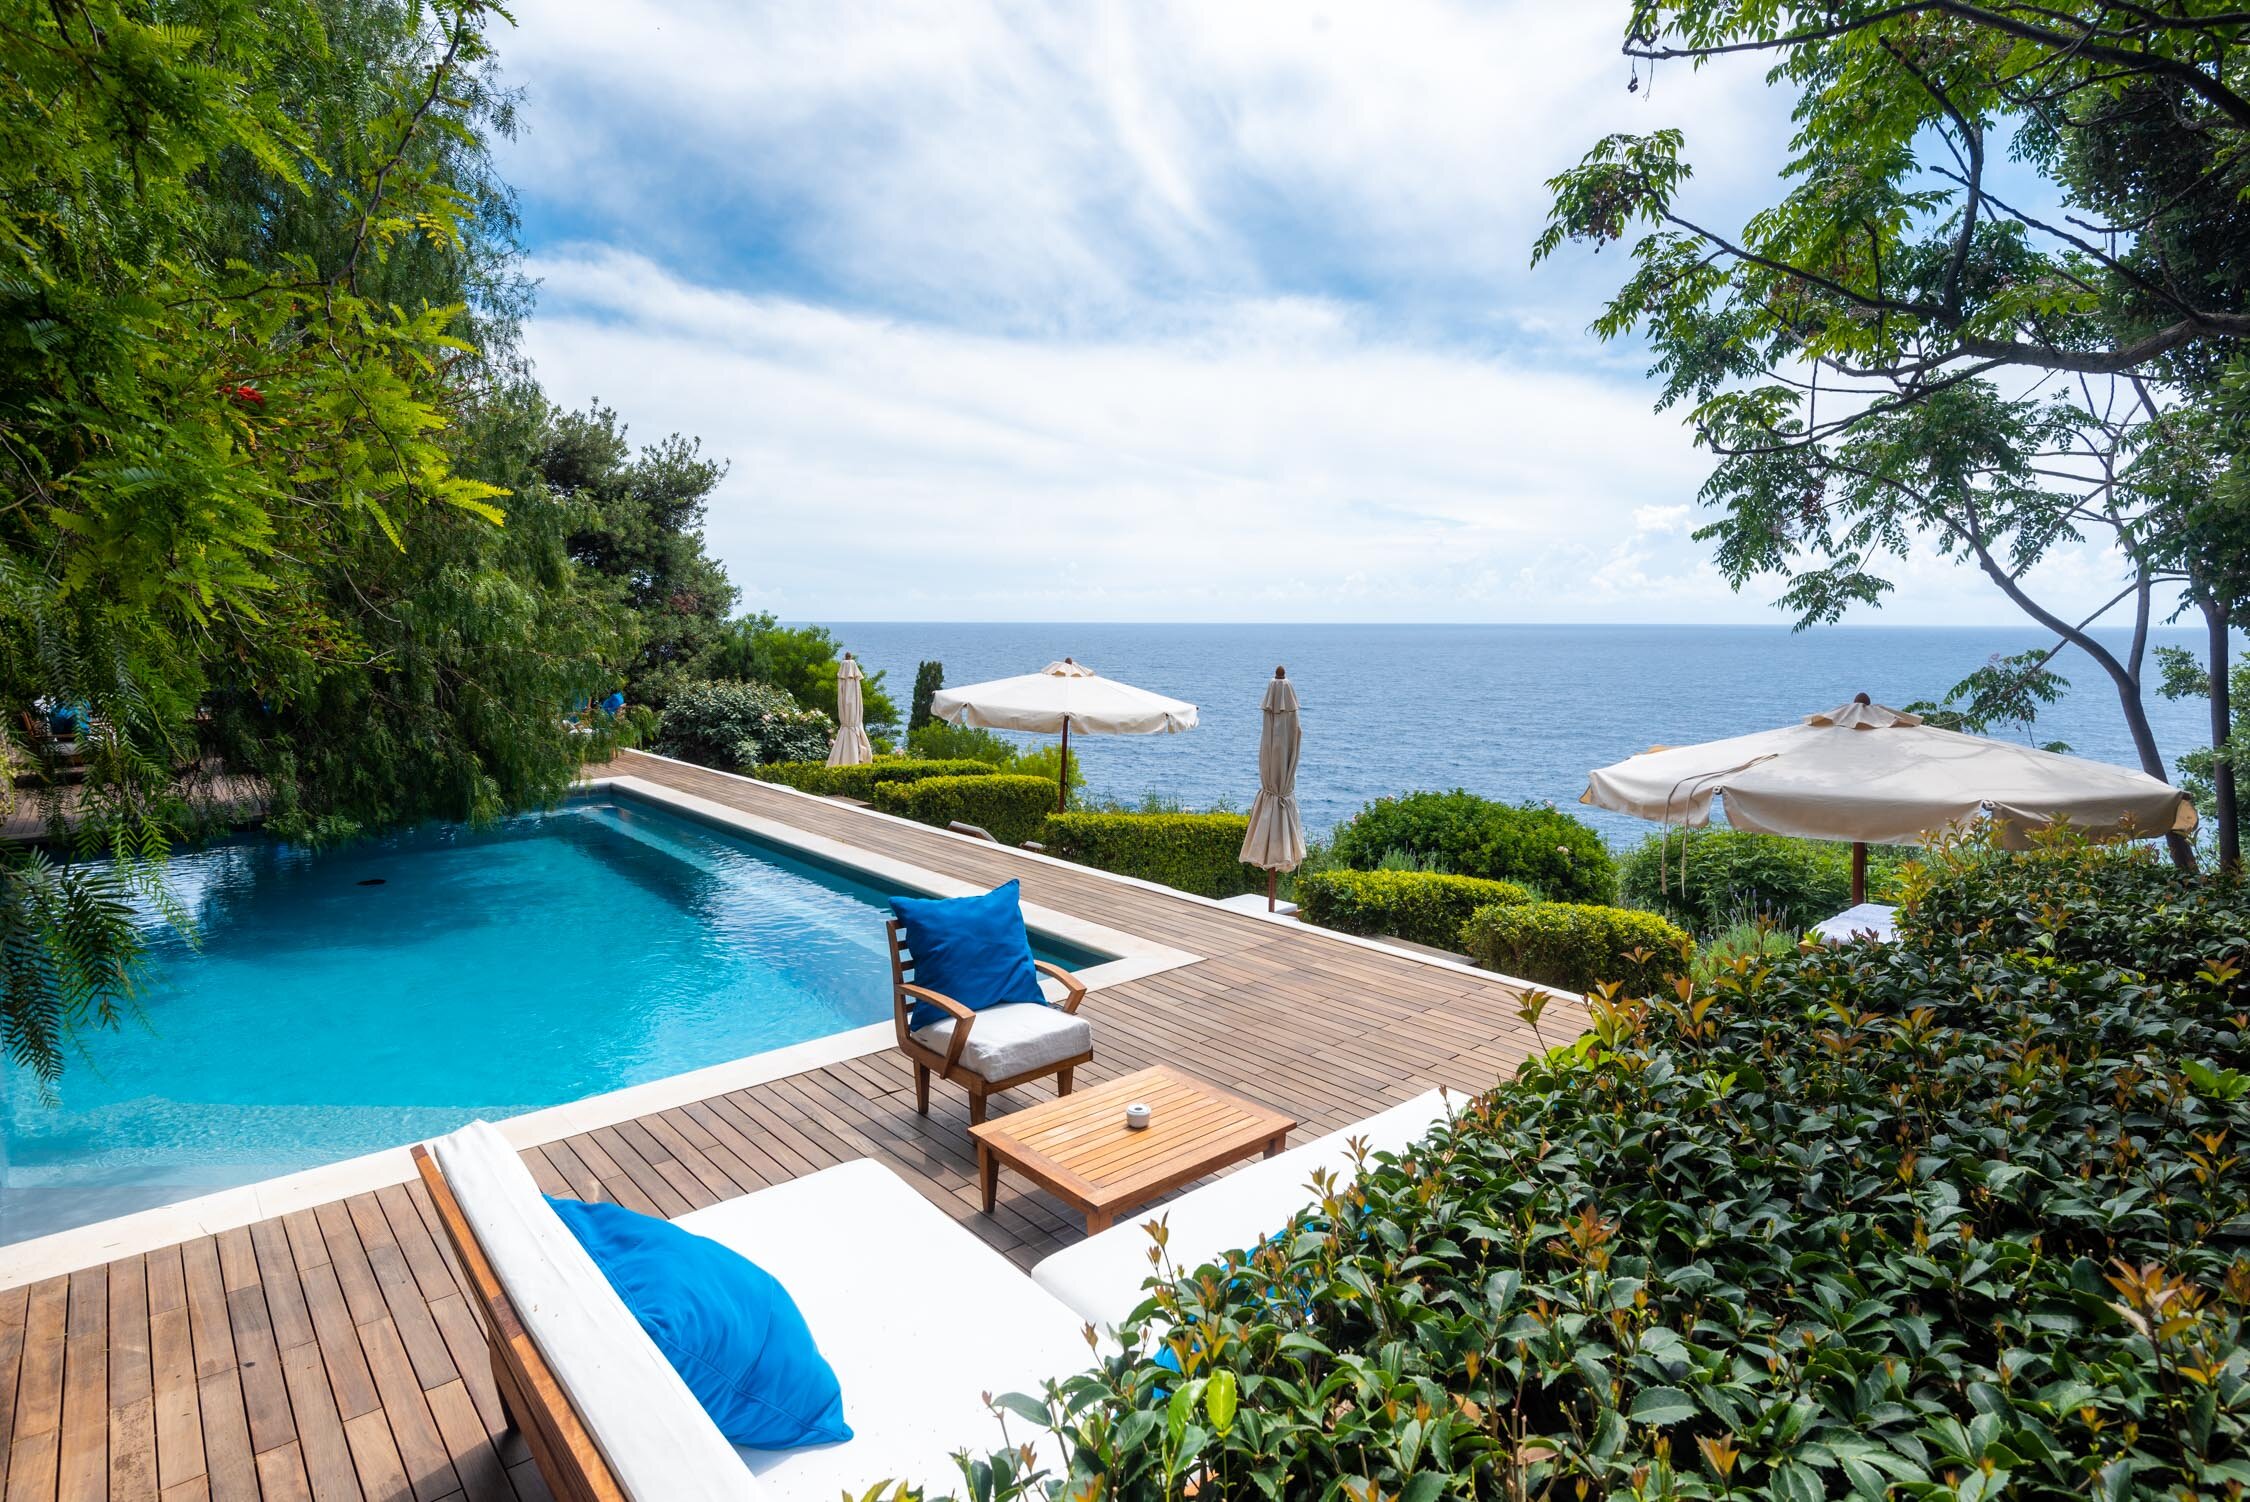 Casa Privata: Praiano, A Luxury Boutique Hotel on the Amalfi Coast